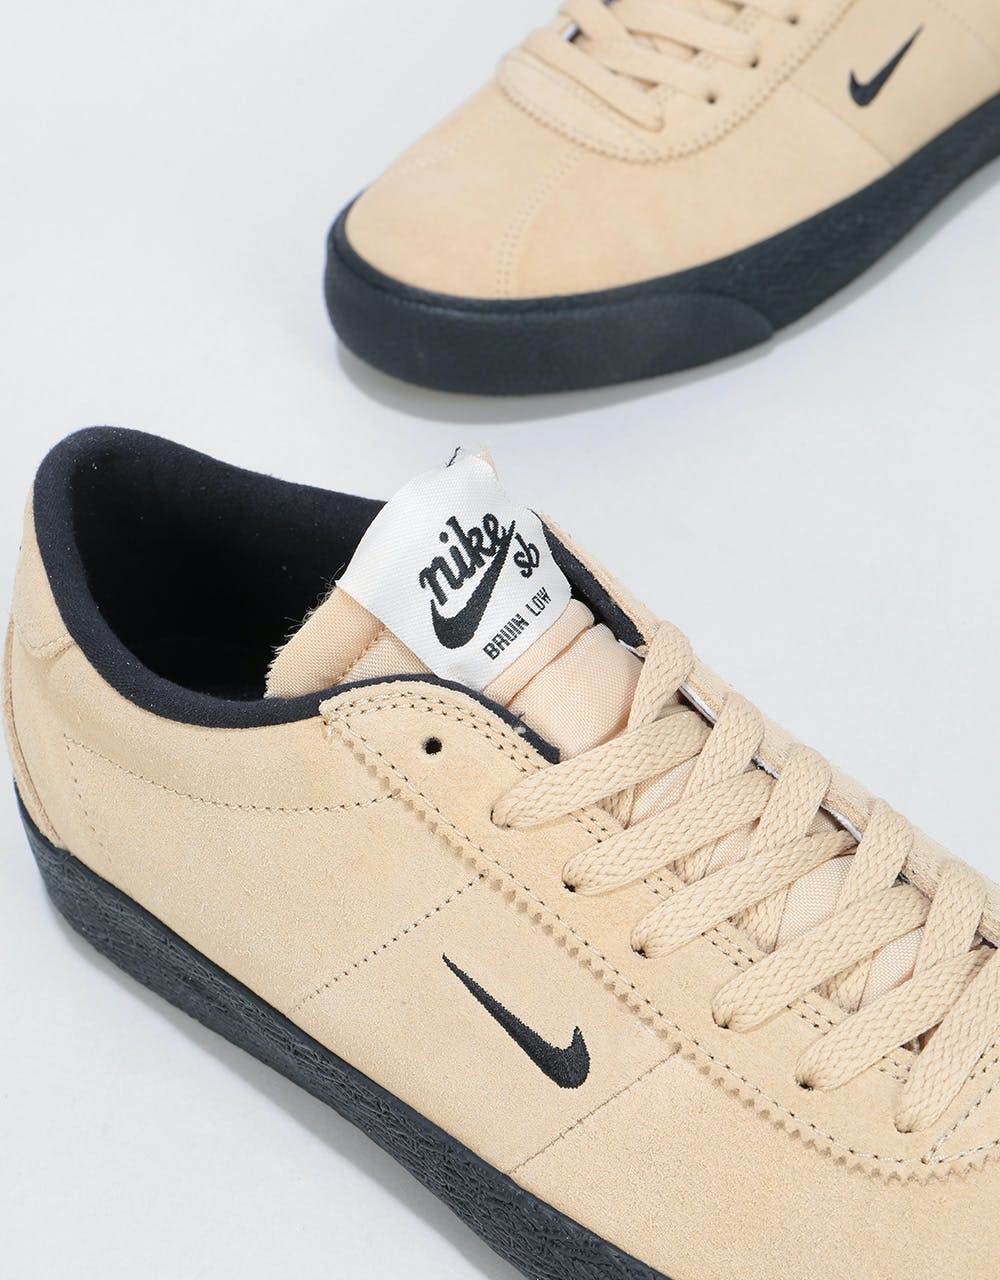 Nike SB Zoom Bruin Ultra Skate Shoes - Desert Ore/Black